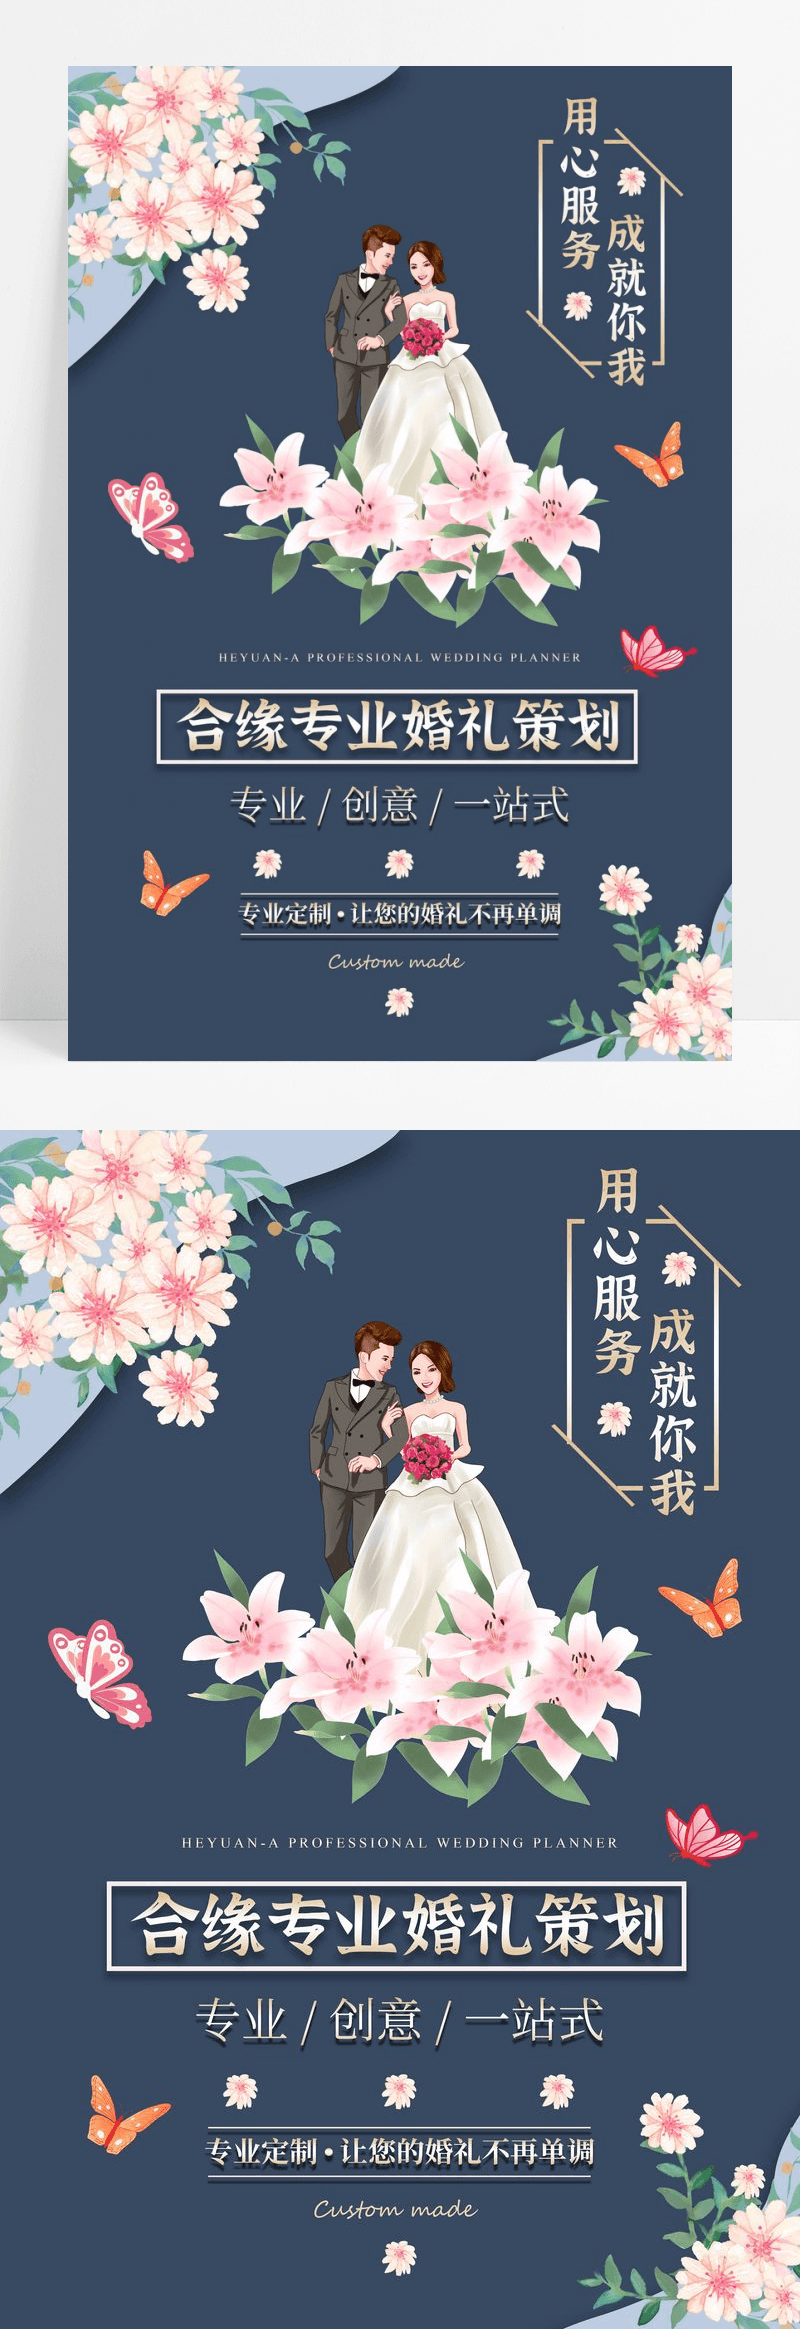 大气轻奢唯美婚庆婚礼策划海报设计